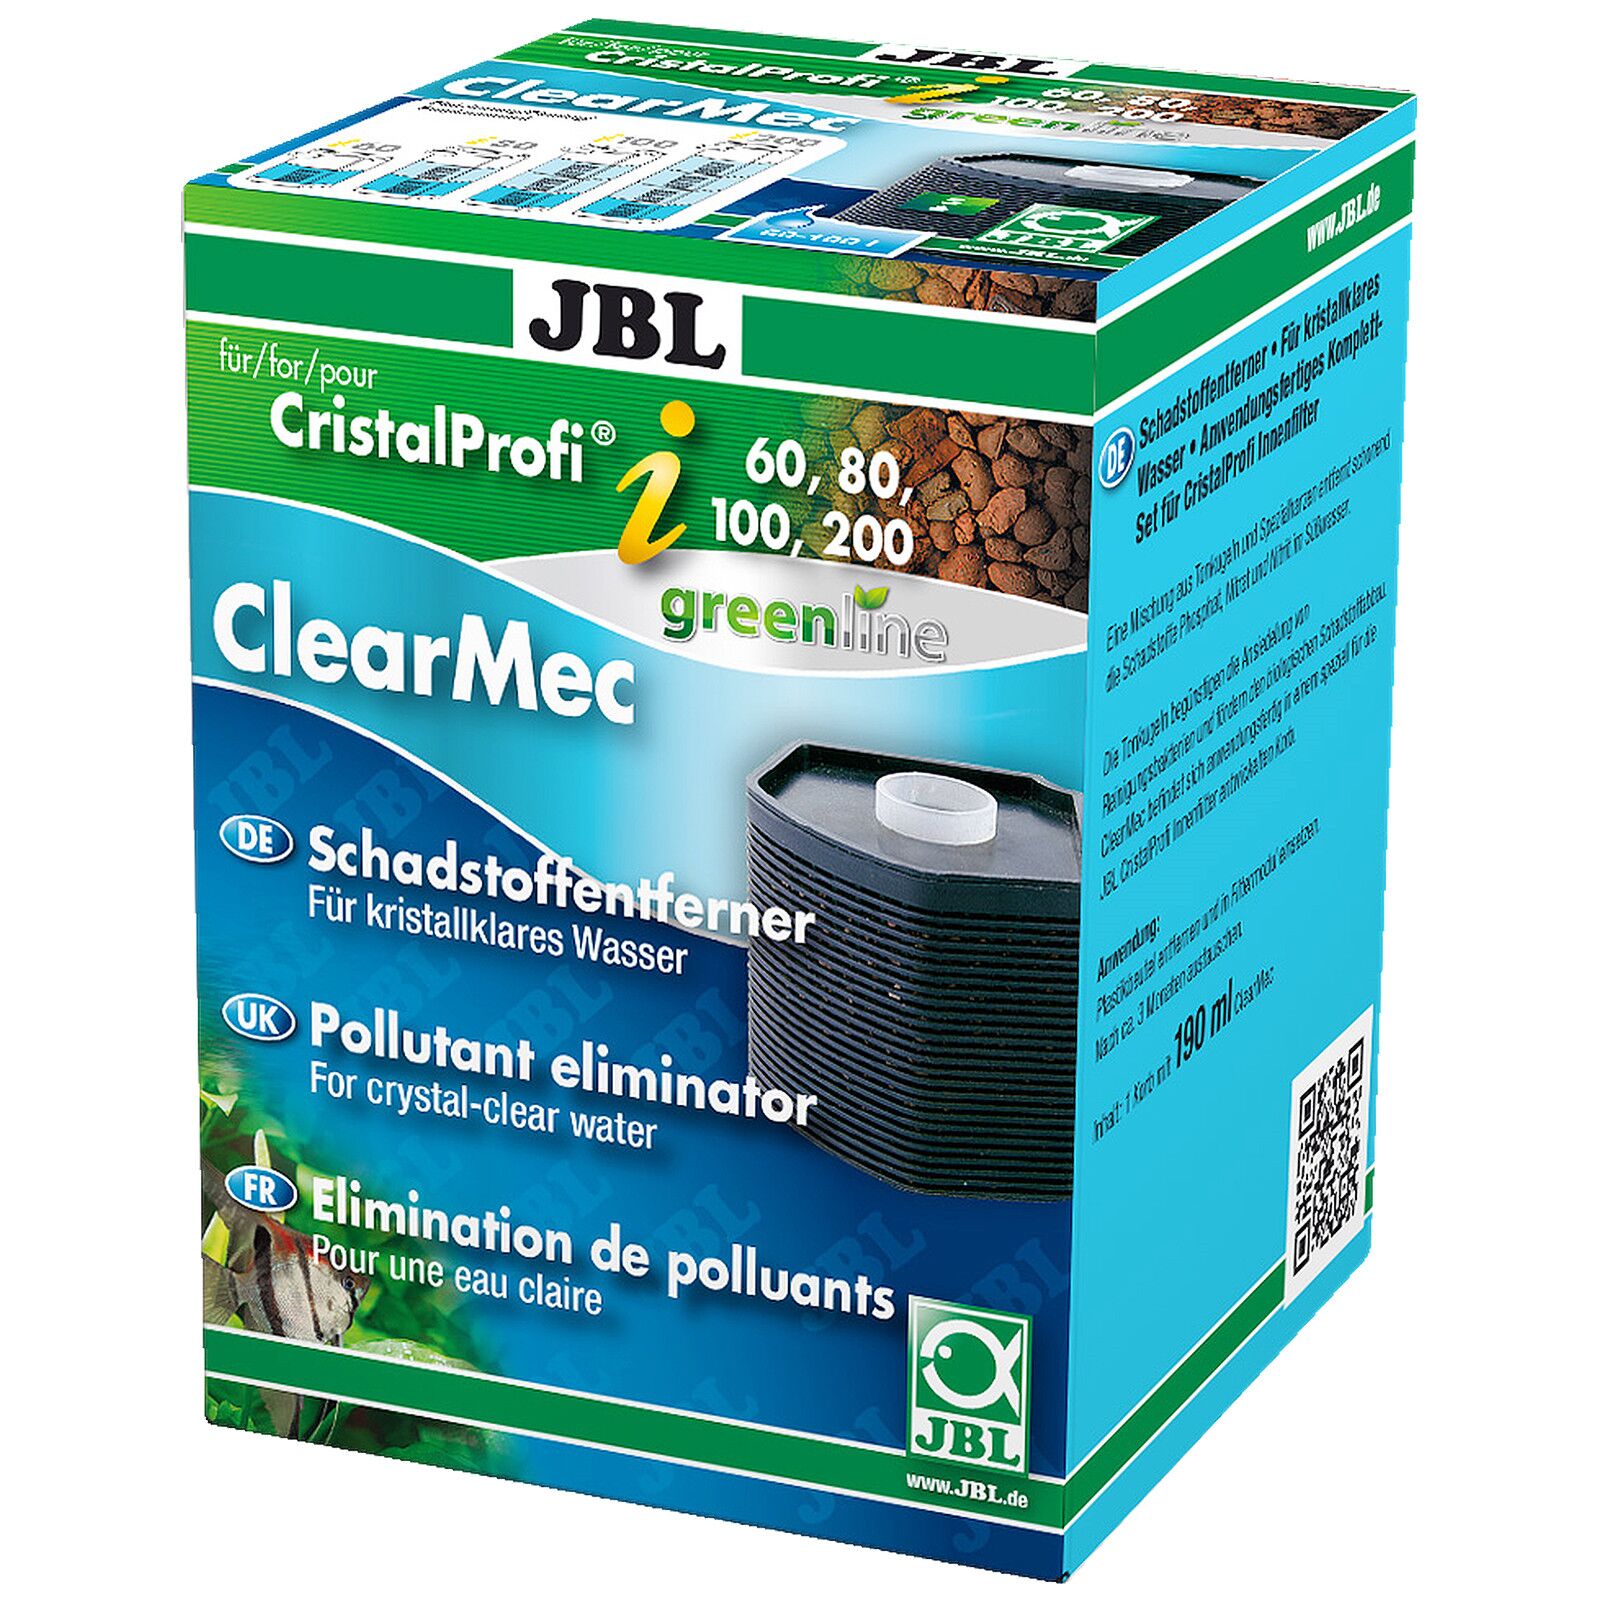 JBL - Clearmec - CristalProfi i60/80/100/200